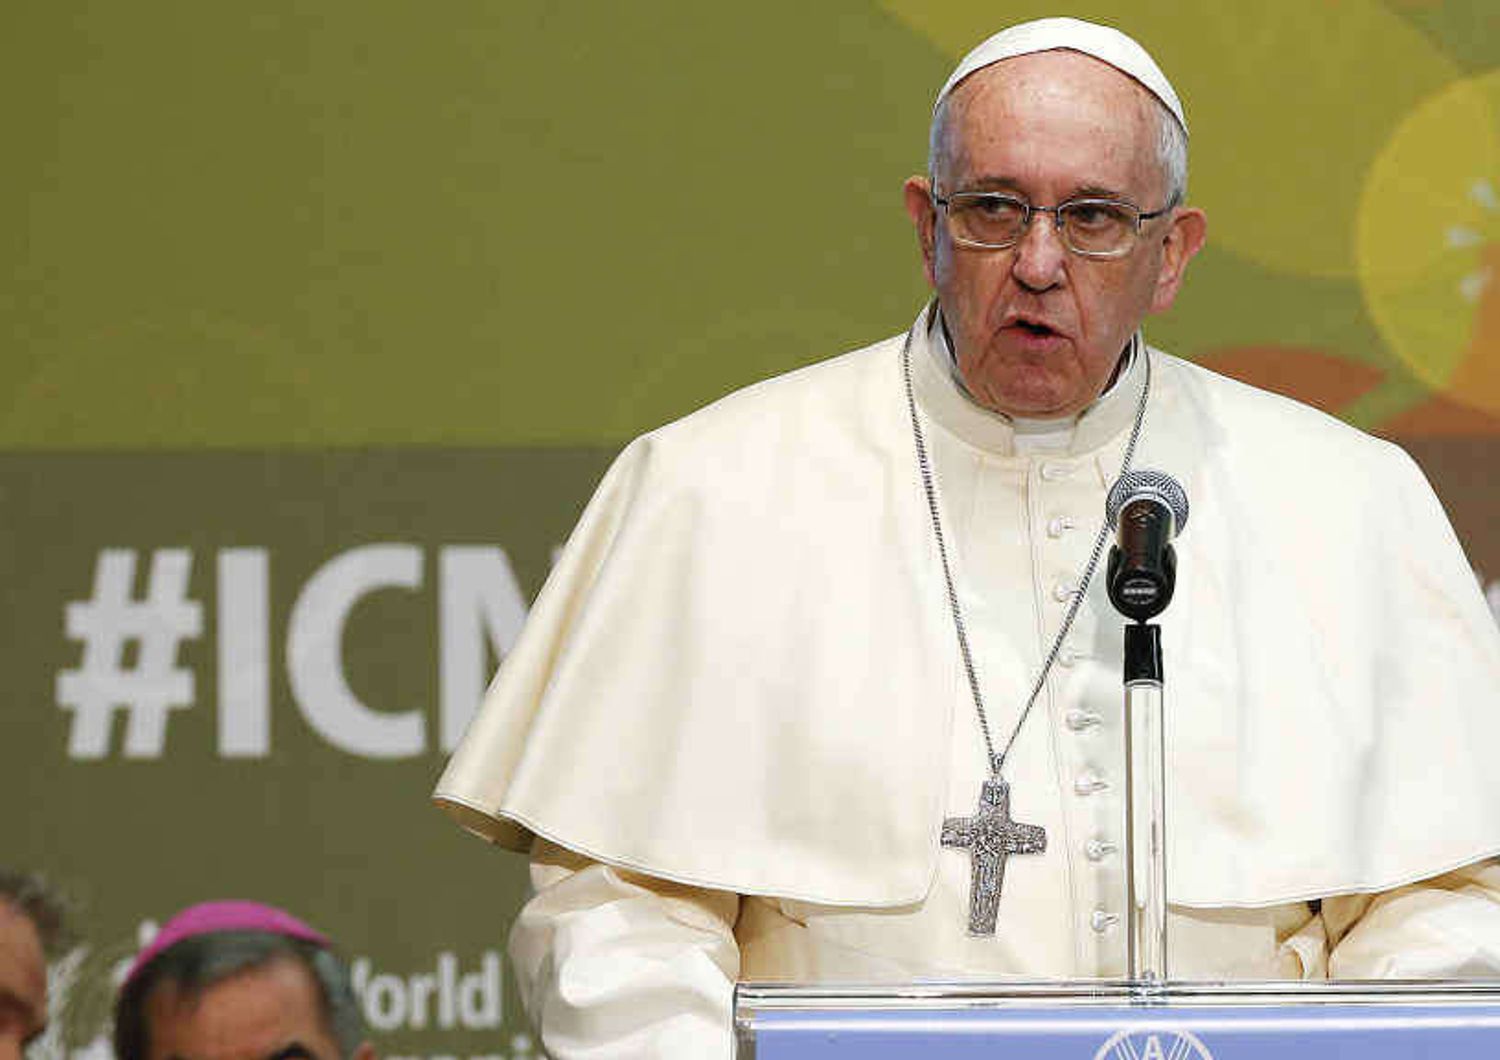 Il Papa alle parrocchie: "Scandaloso far pagare i sacramenti"